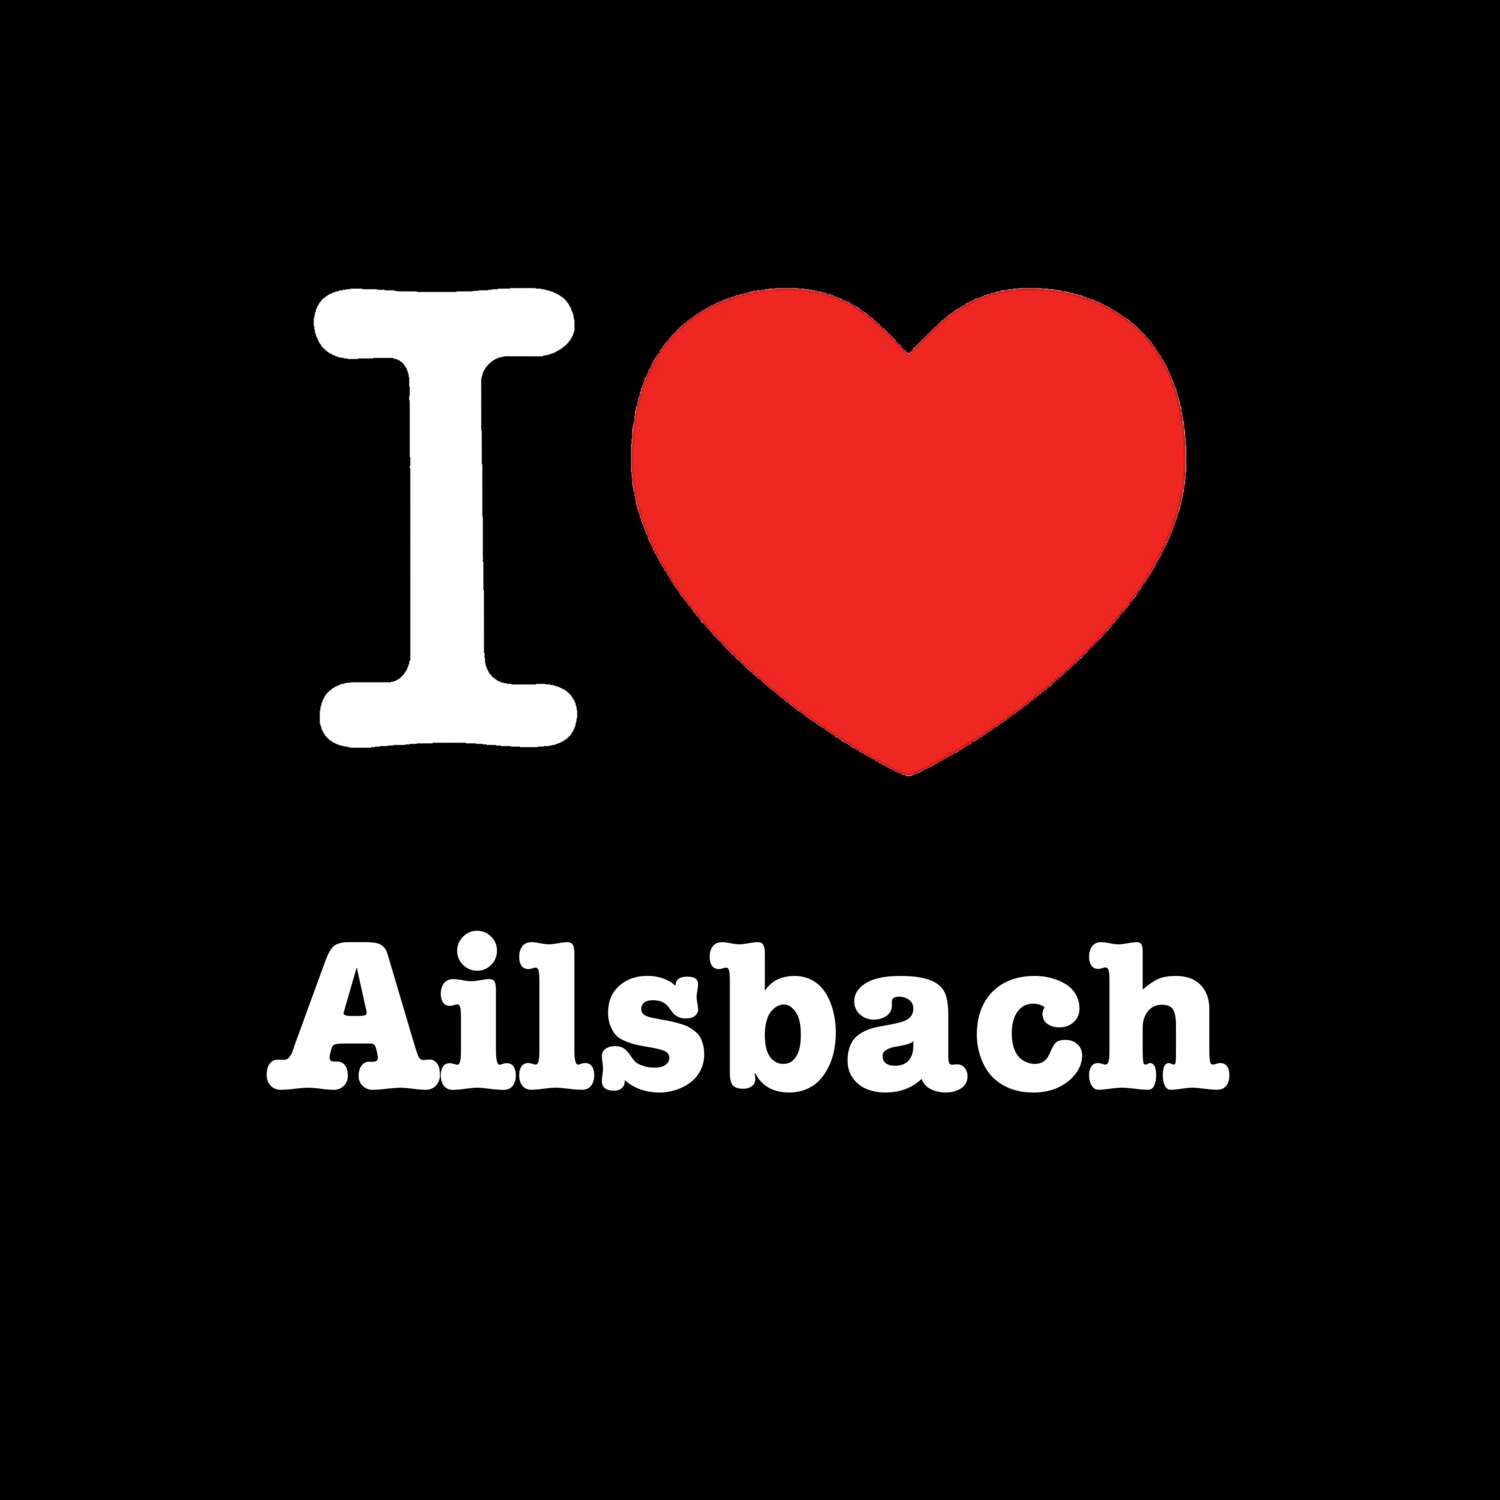 Ailsbach T-Shirt »I love«